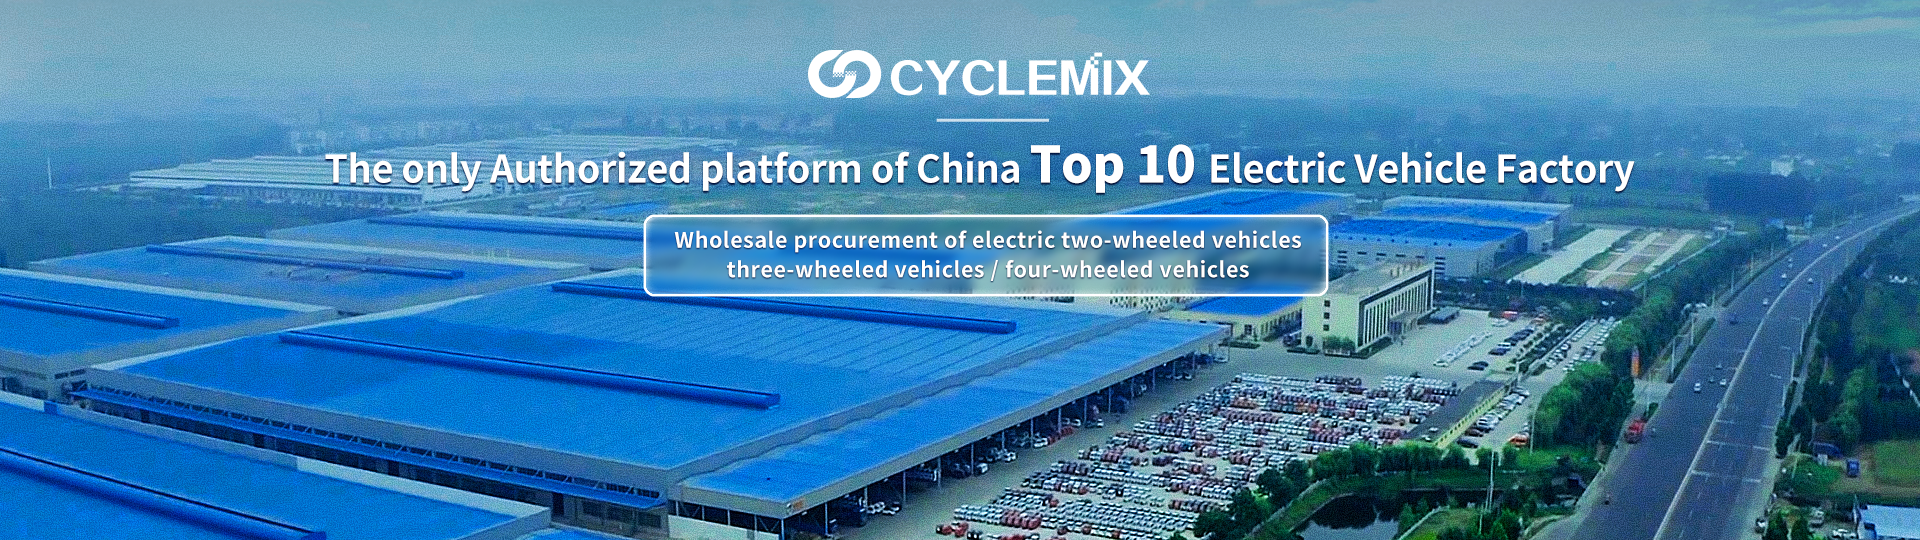 CYCLEMIX L'unico partito/piattaforma autorizzato della Top 10 delle fabbriche cinesi di veicoli elettrici